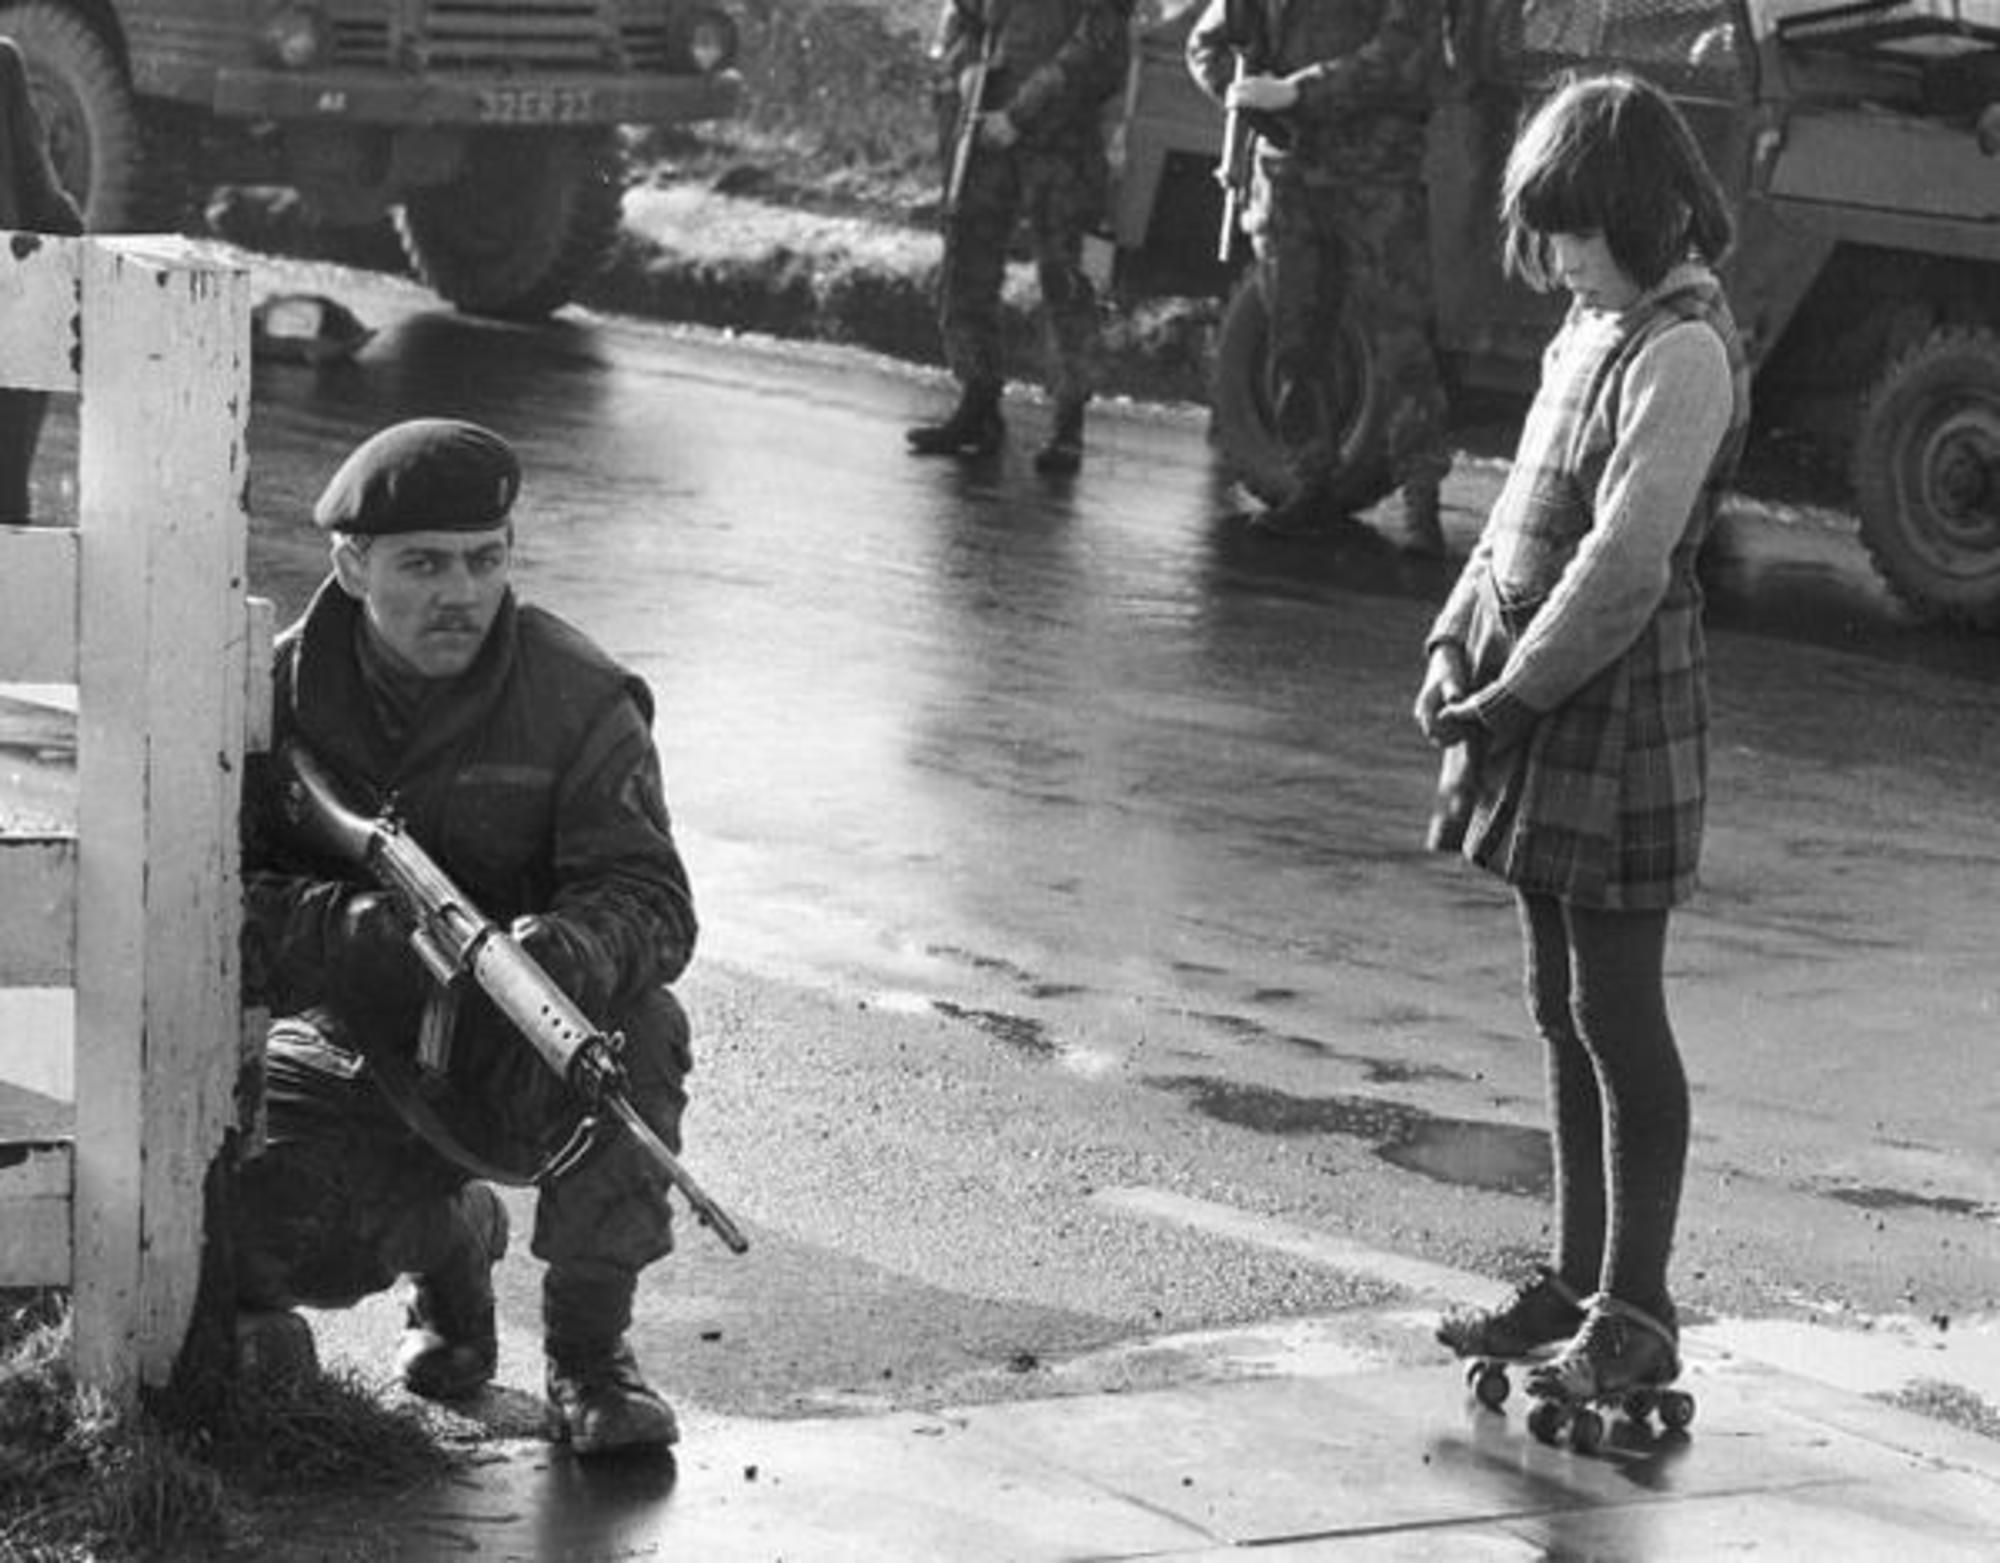 Любопытная девочка наблюдает за действием армейского патруля, Северная Ирландия, 1969 г.